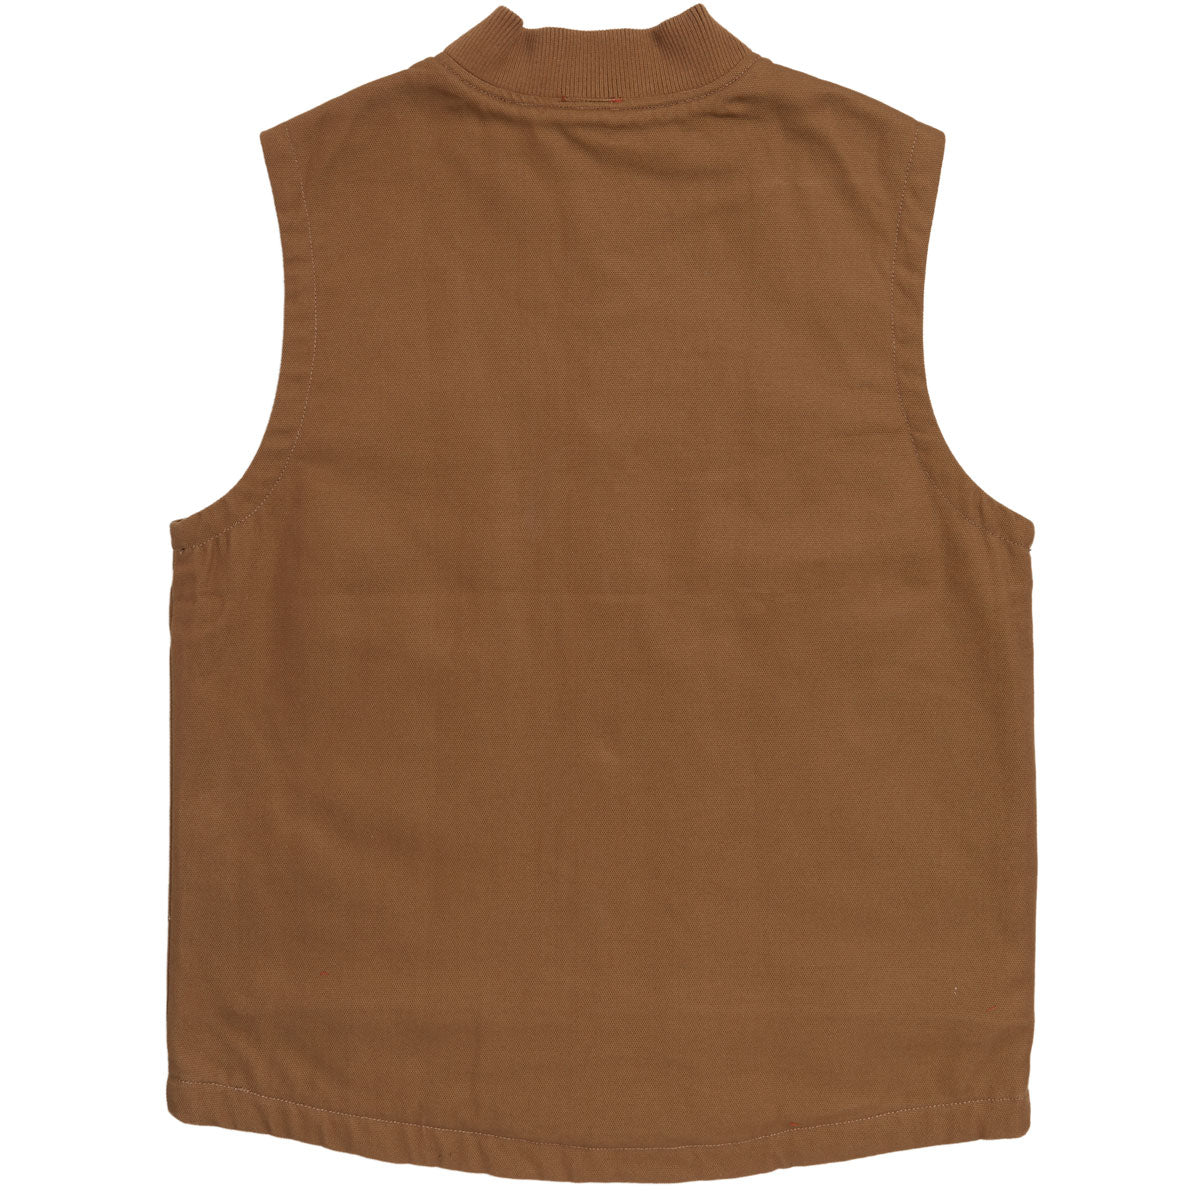 Chocolate Work Vest Jacket - Saddle image 2